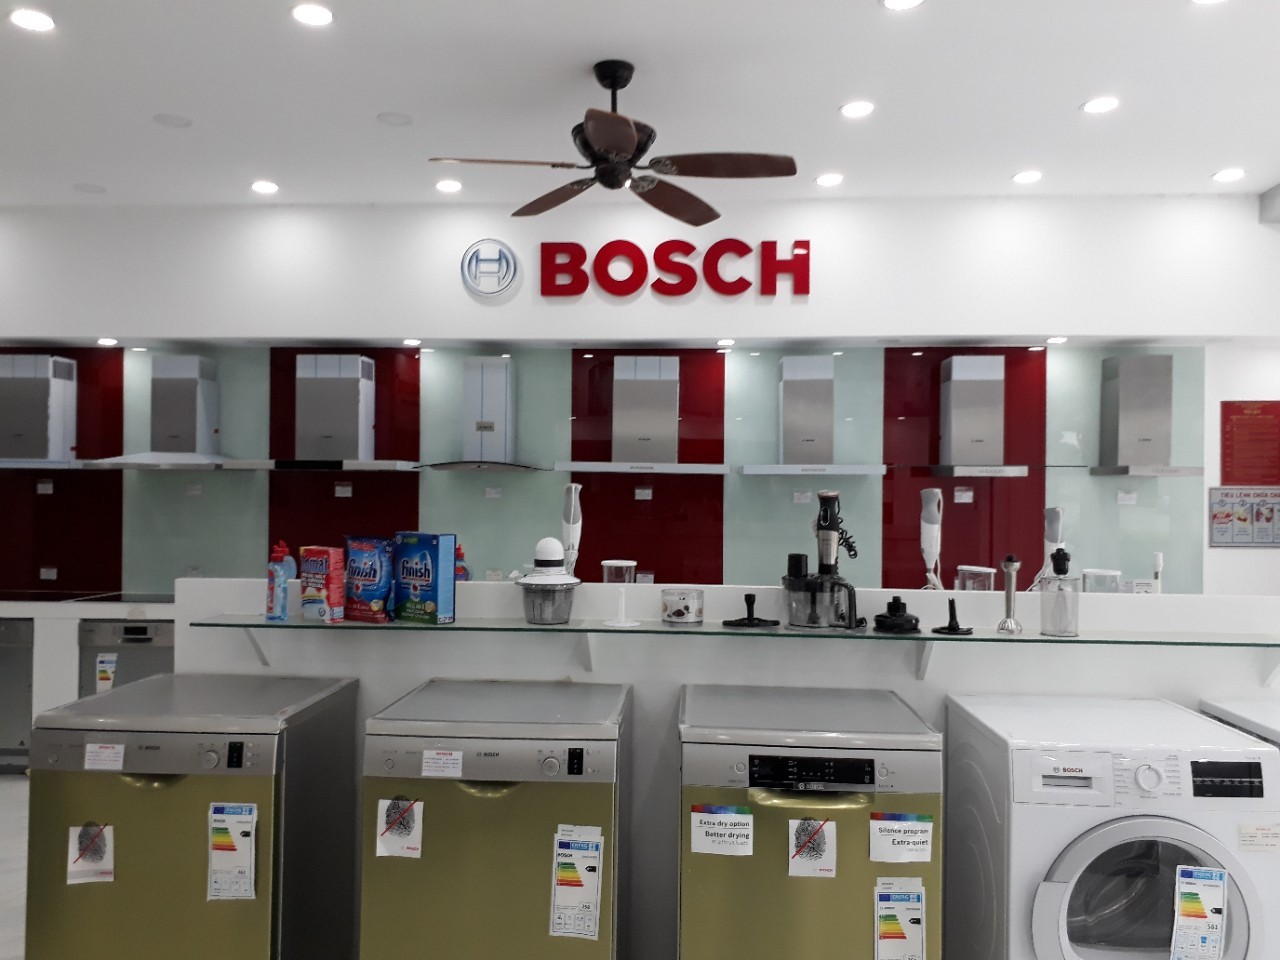 Mua máy rửa bát Bosch chính hãng ở đâu tại Hà Nội?